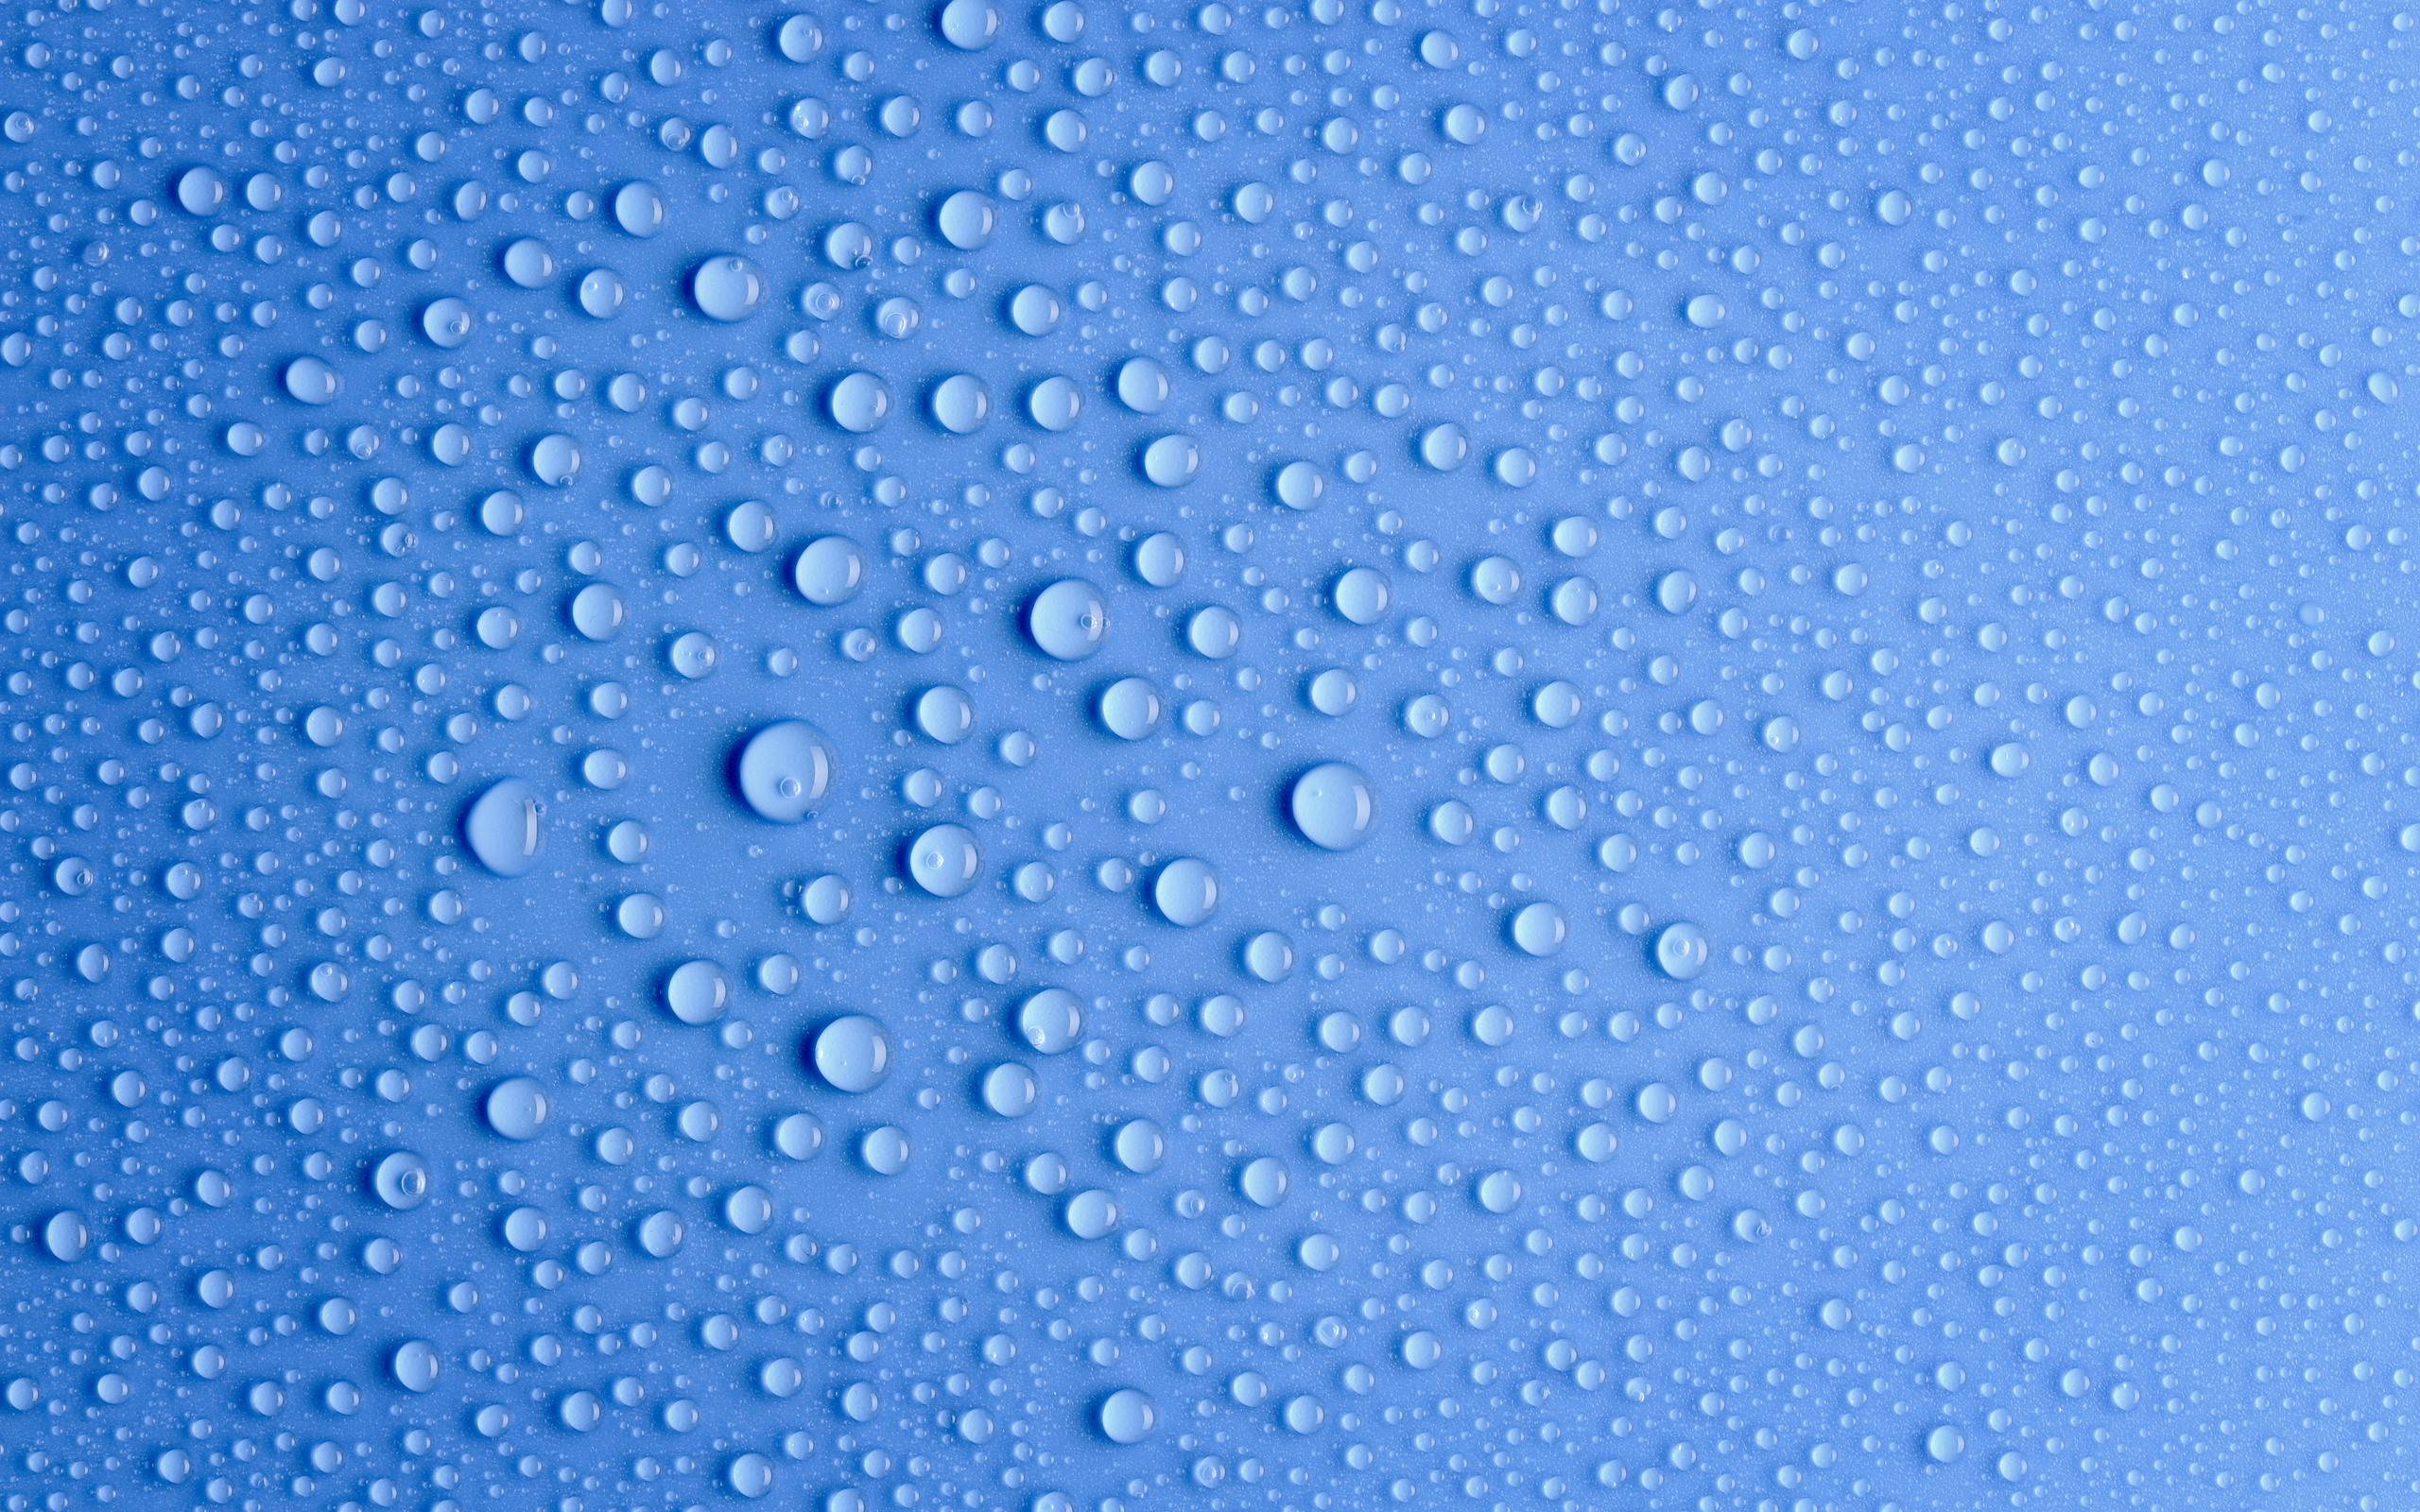 3 gocce d'acqua fresca hd wallpaper,blu,acqua,far cadere,modello,umidità